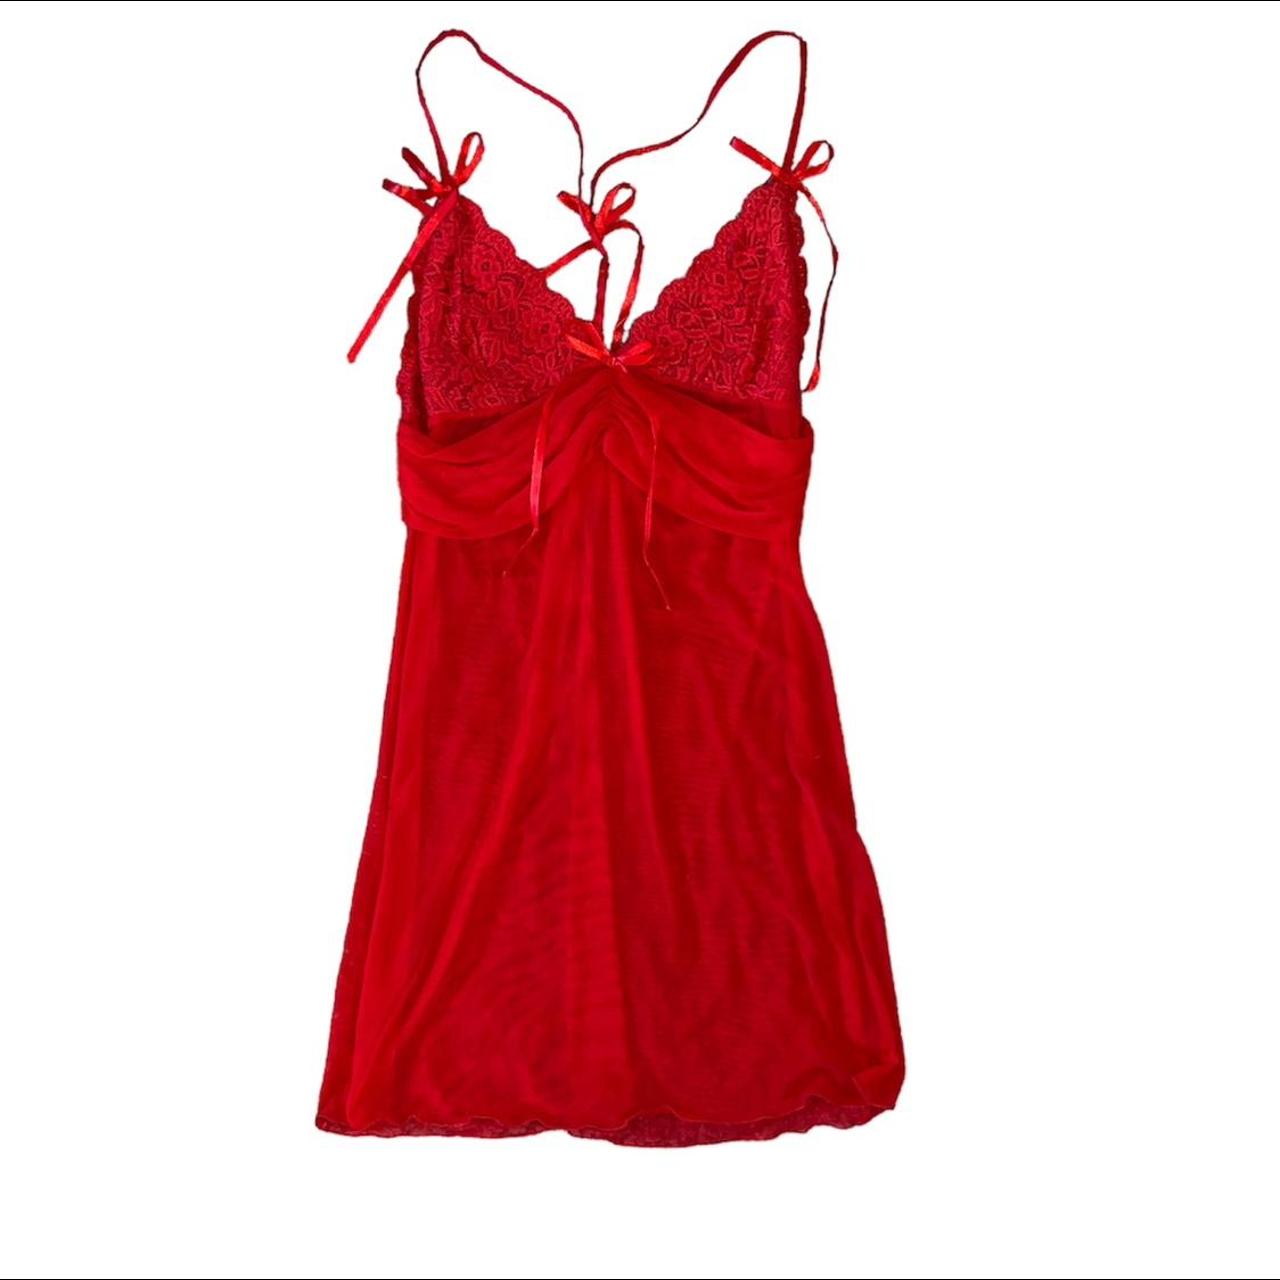 red femme fatale slip dress 🎈 🍀 unknown size, would... - Depop